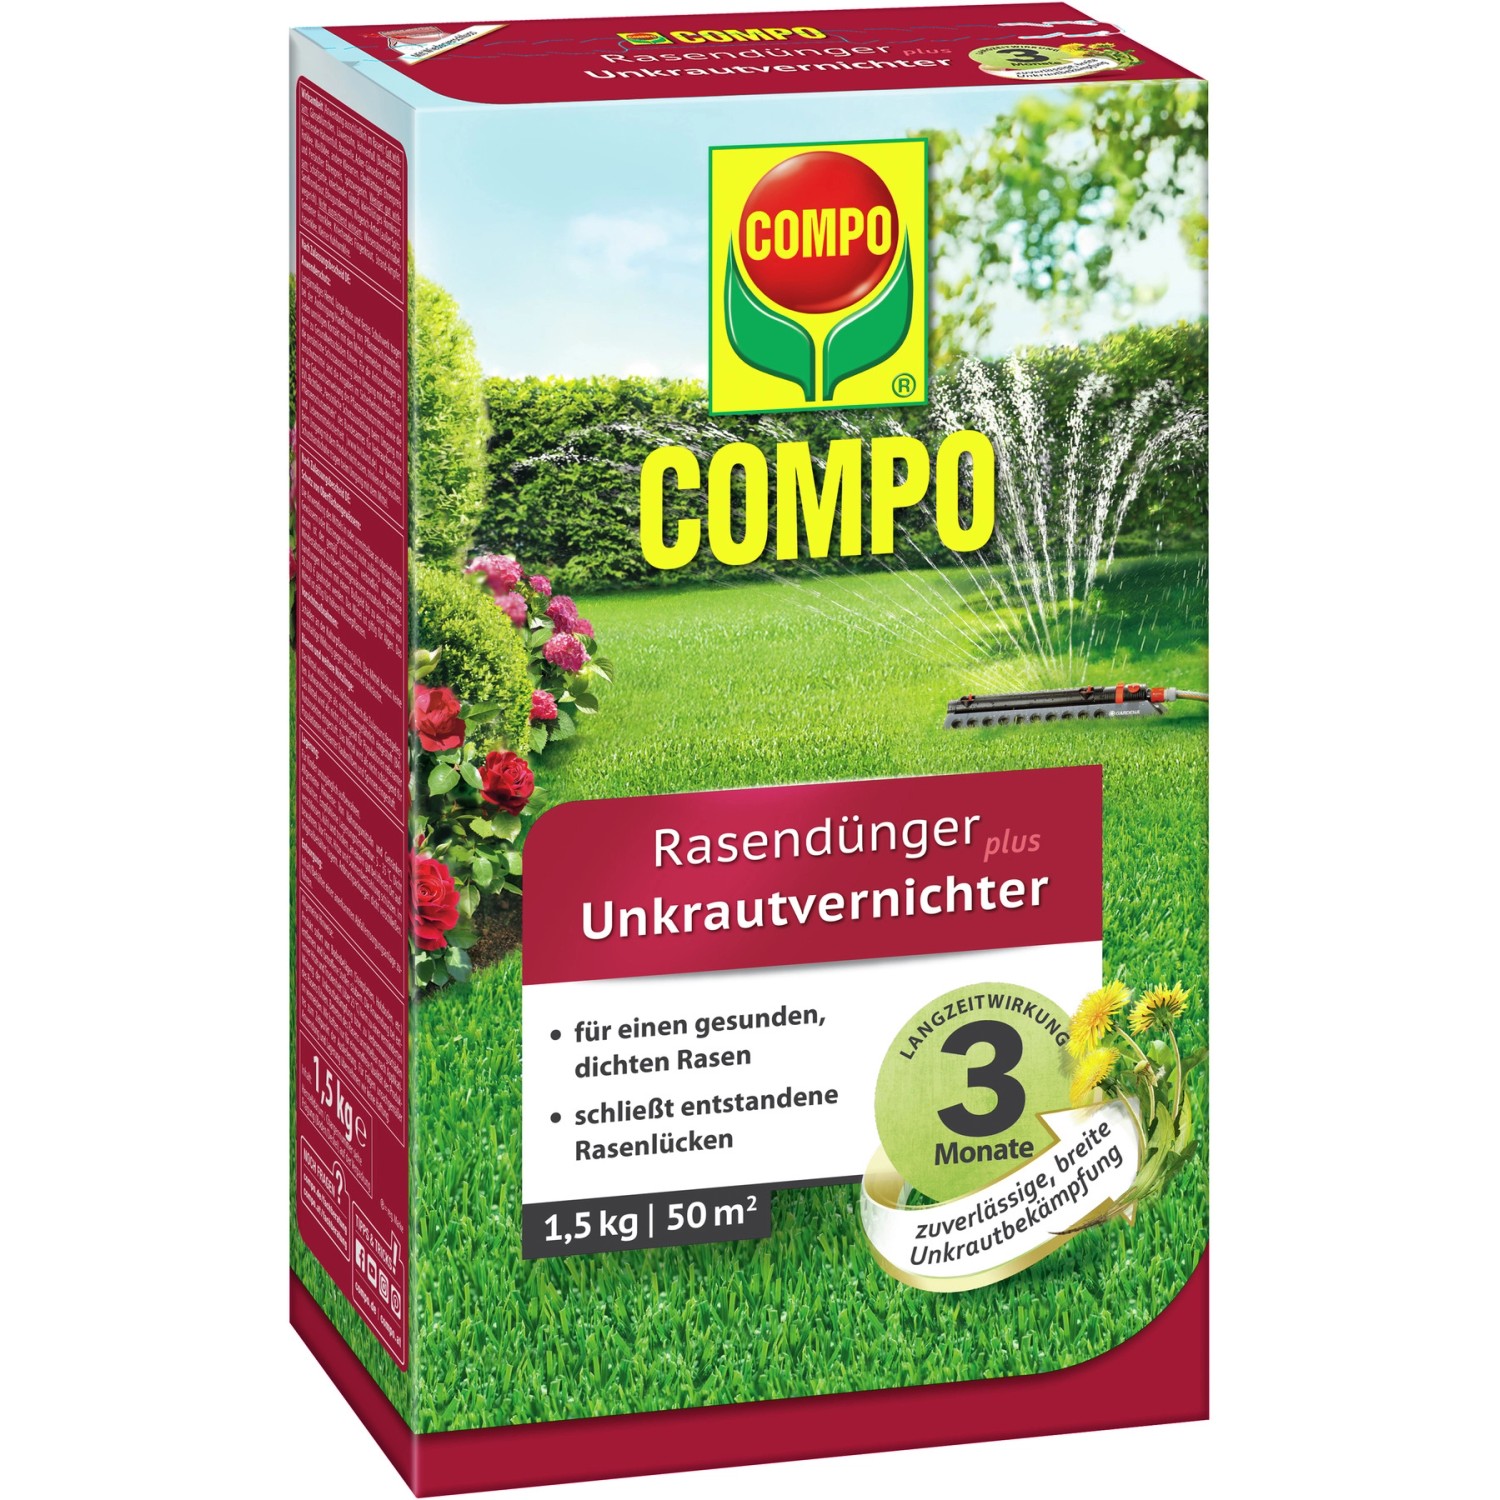 Compo Rasendünger plus Unkrautvernichter 1,5 kg für 50 m²